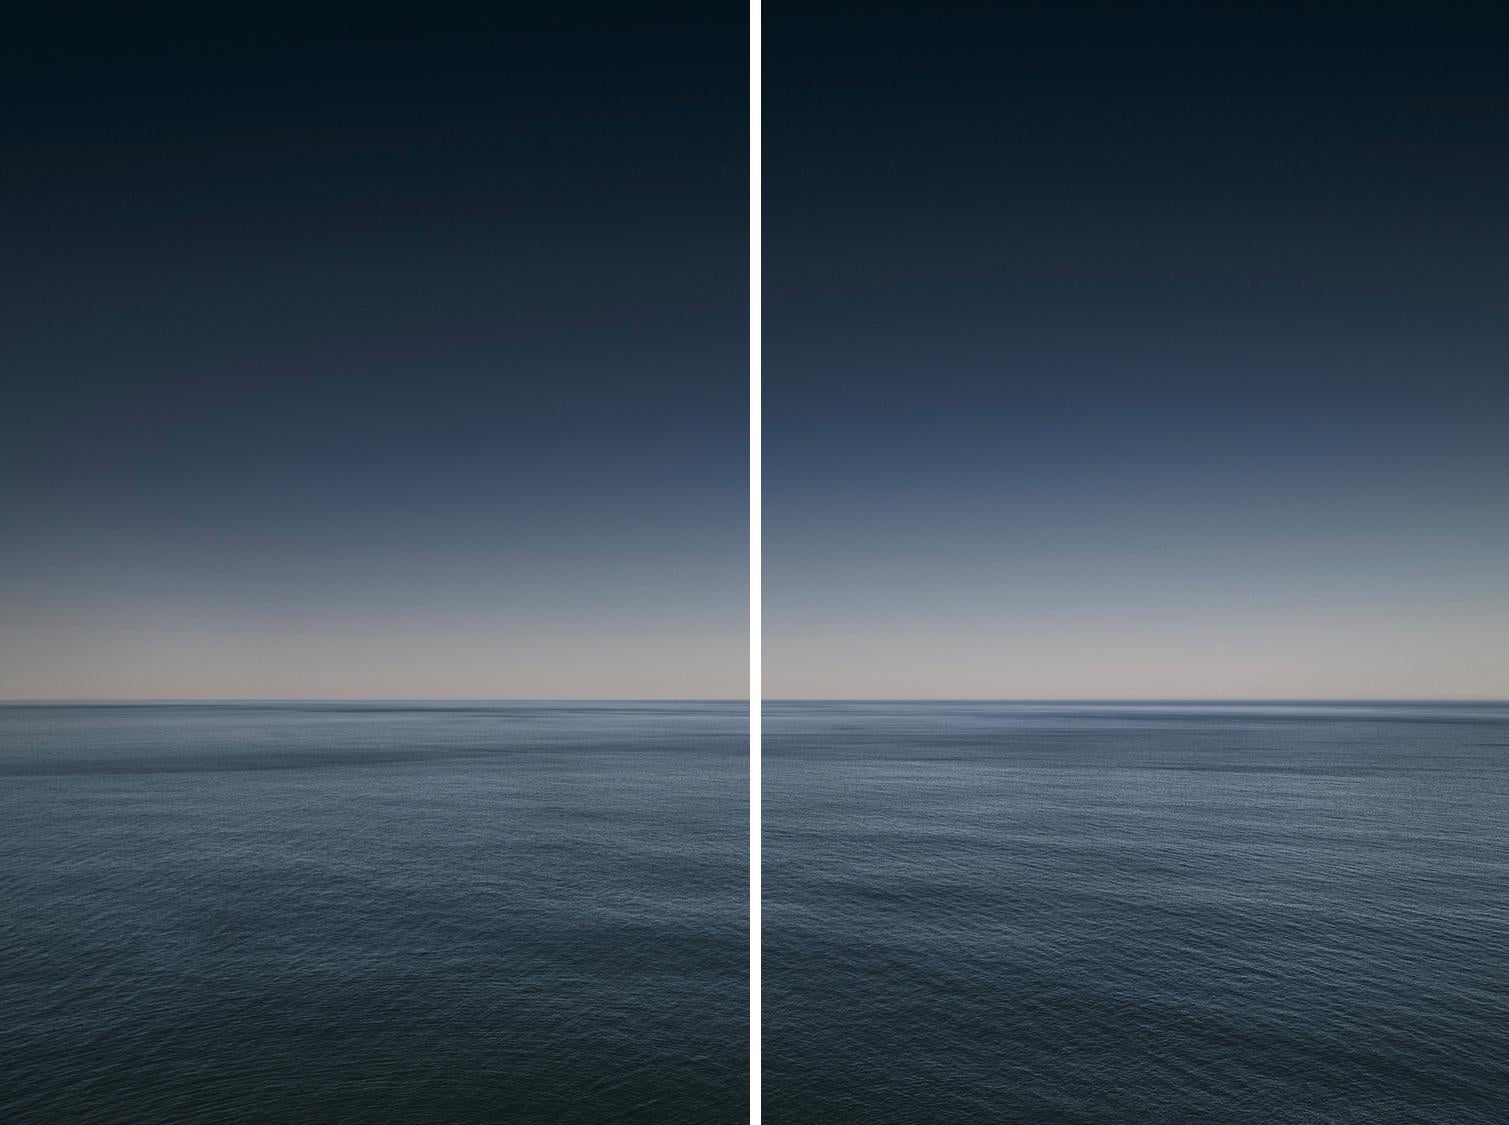 Paysage marin I Diptyque (encadré) - photographie abstraite d'horizon nuageux en aquarelle